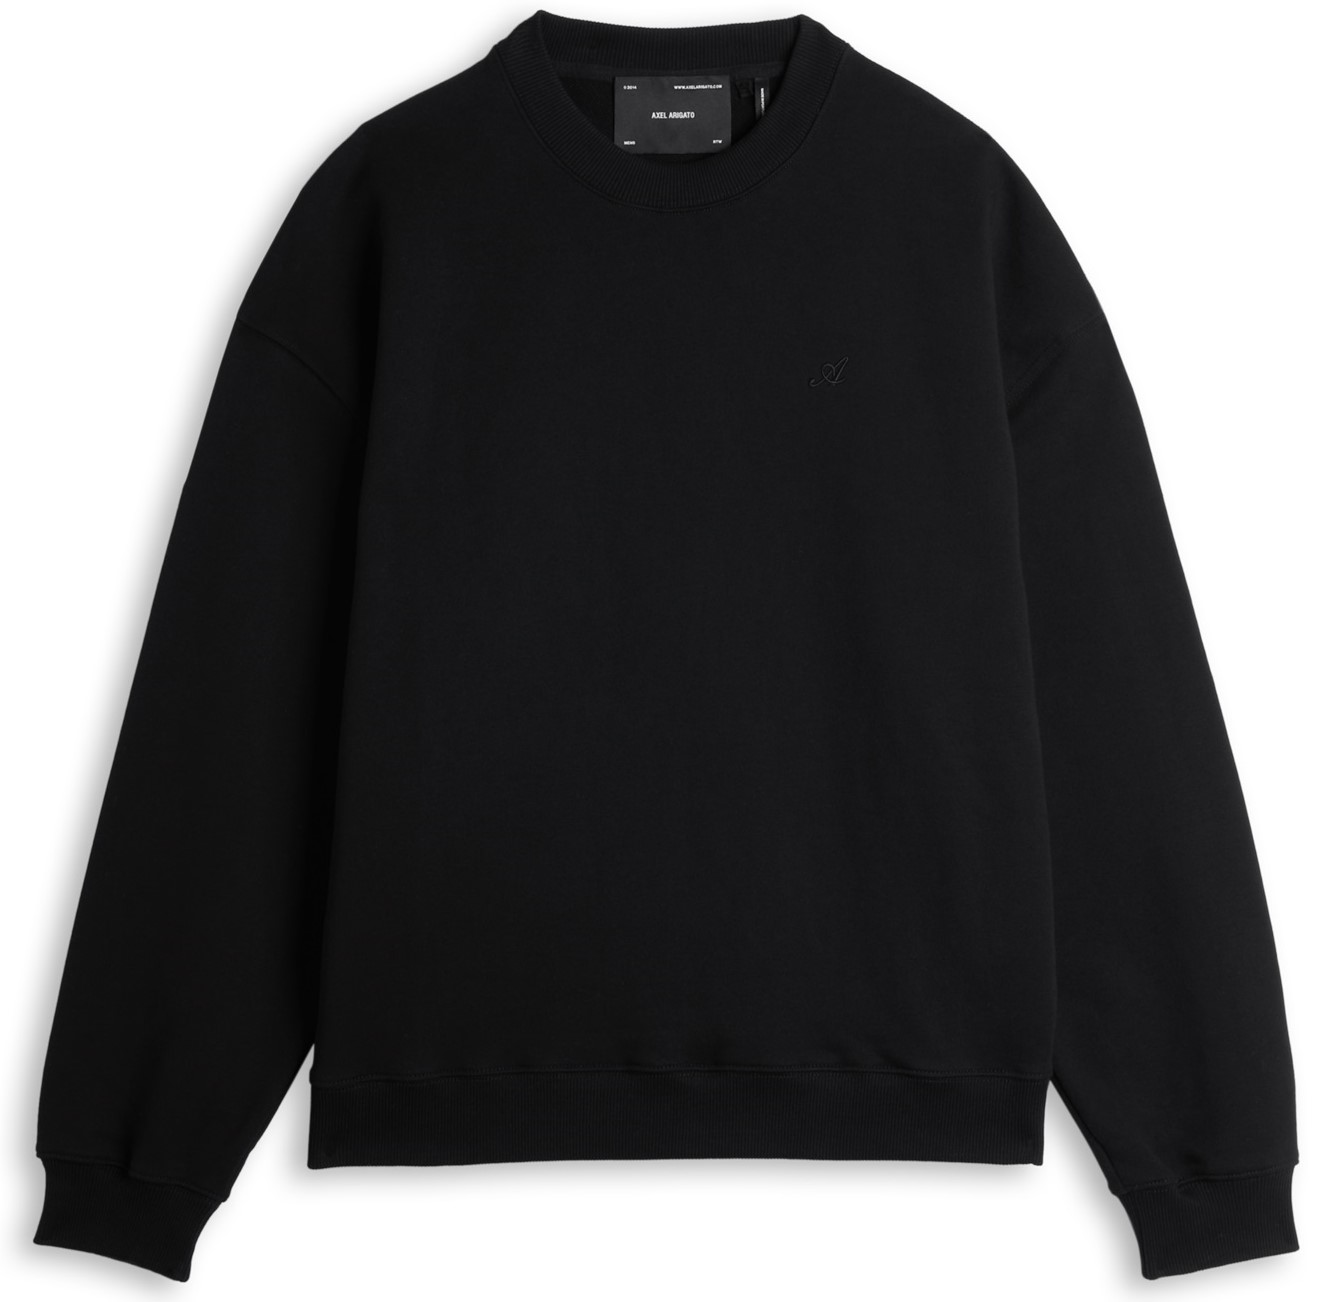 AXEL ARIGATO Signature Sweatshirt in Black M